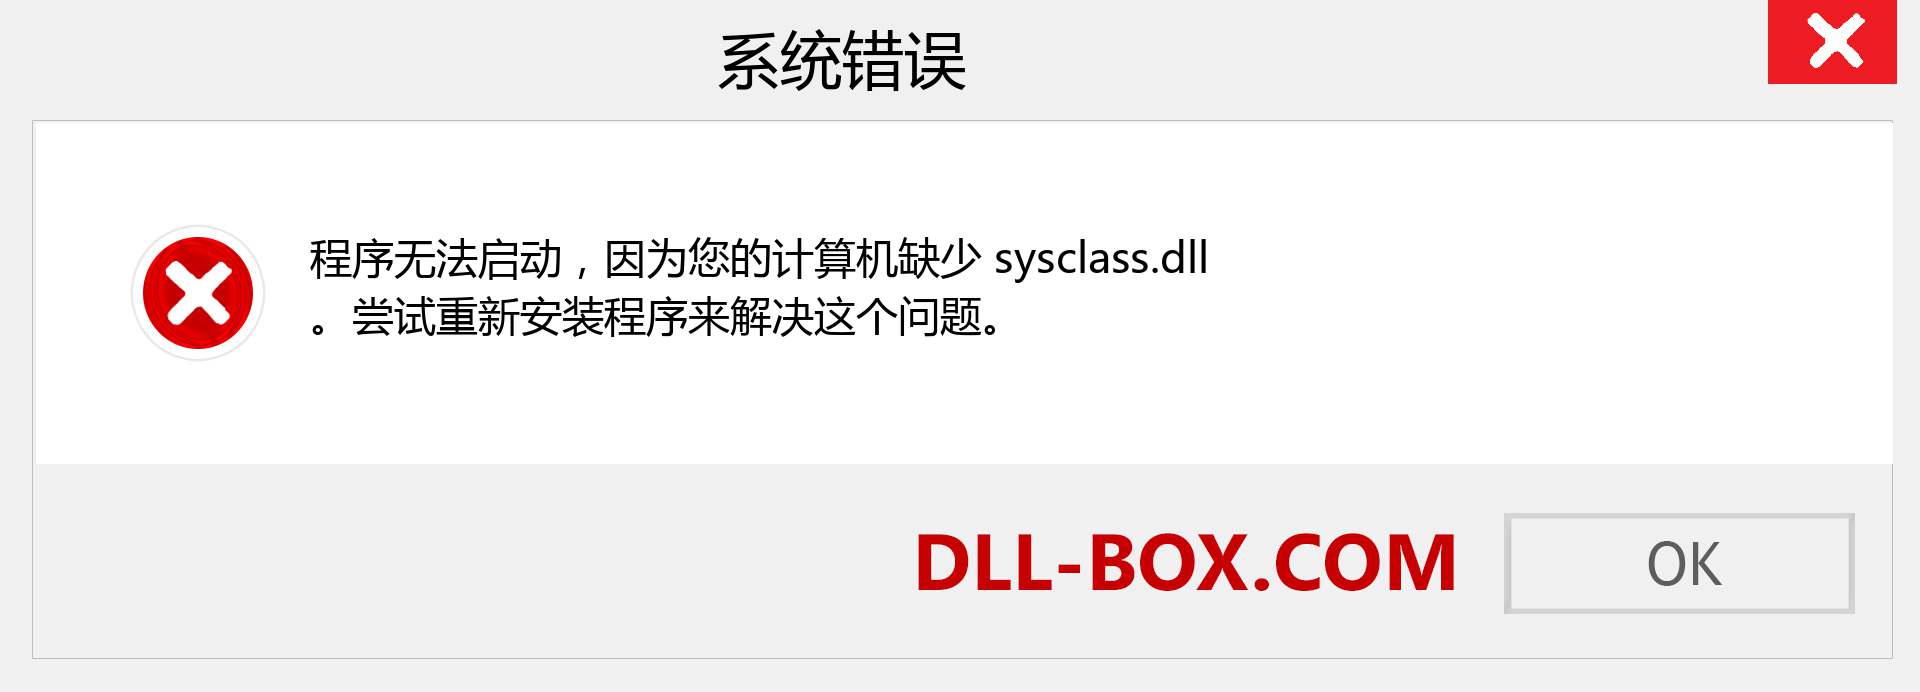 sysclass.dll 文件丢失？。 适用于 Windows 7、8、10 的下载 - 修复 Windows、照片、图像上的 sysclass dll 丢失错误